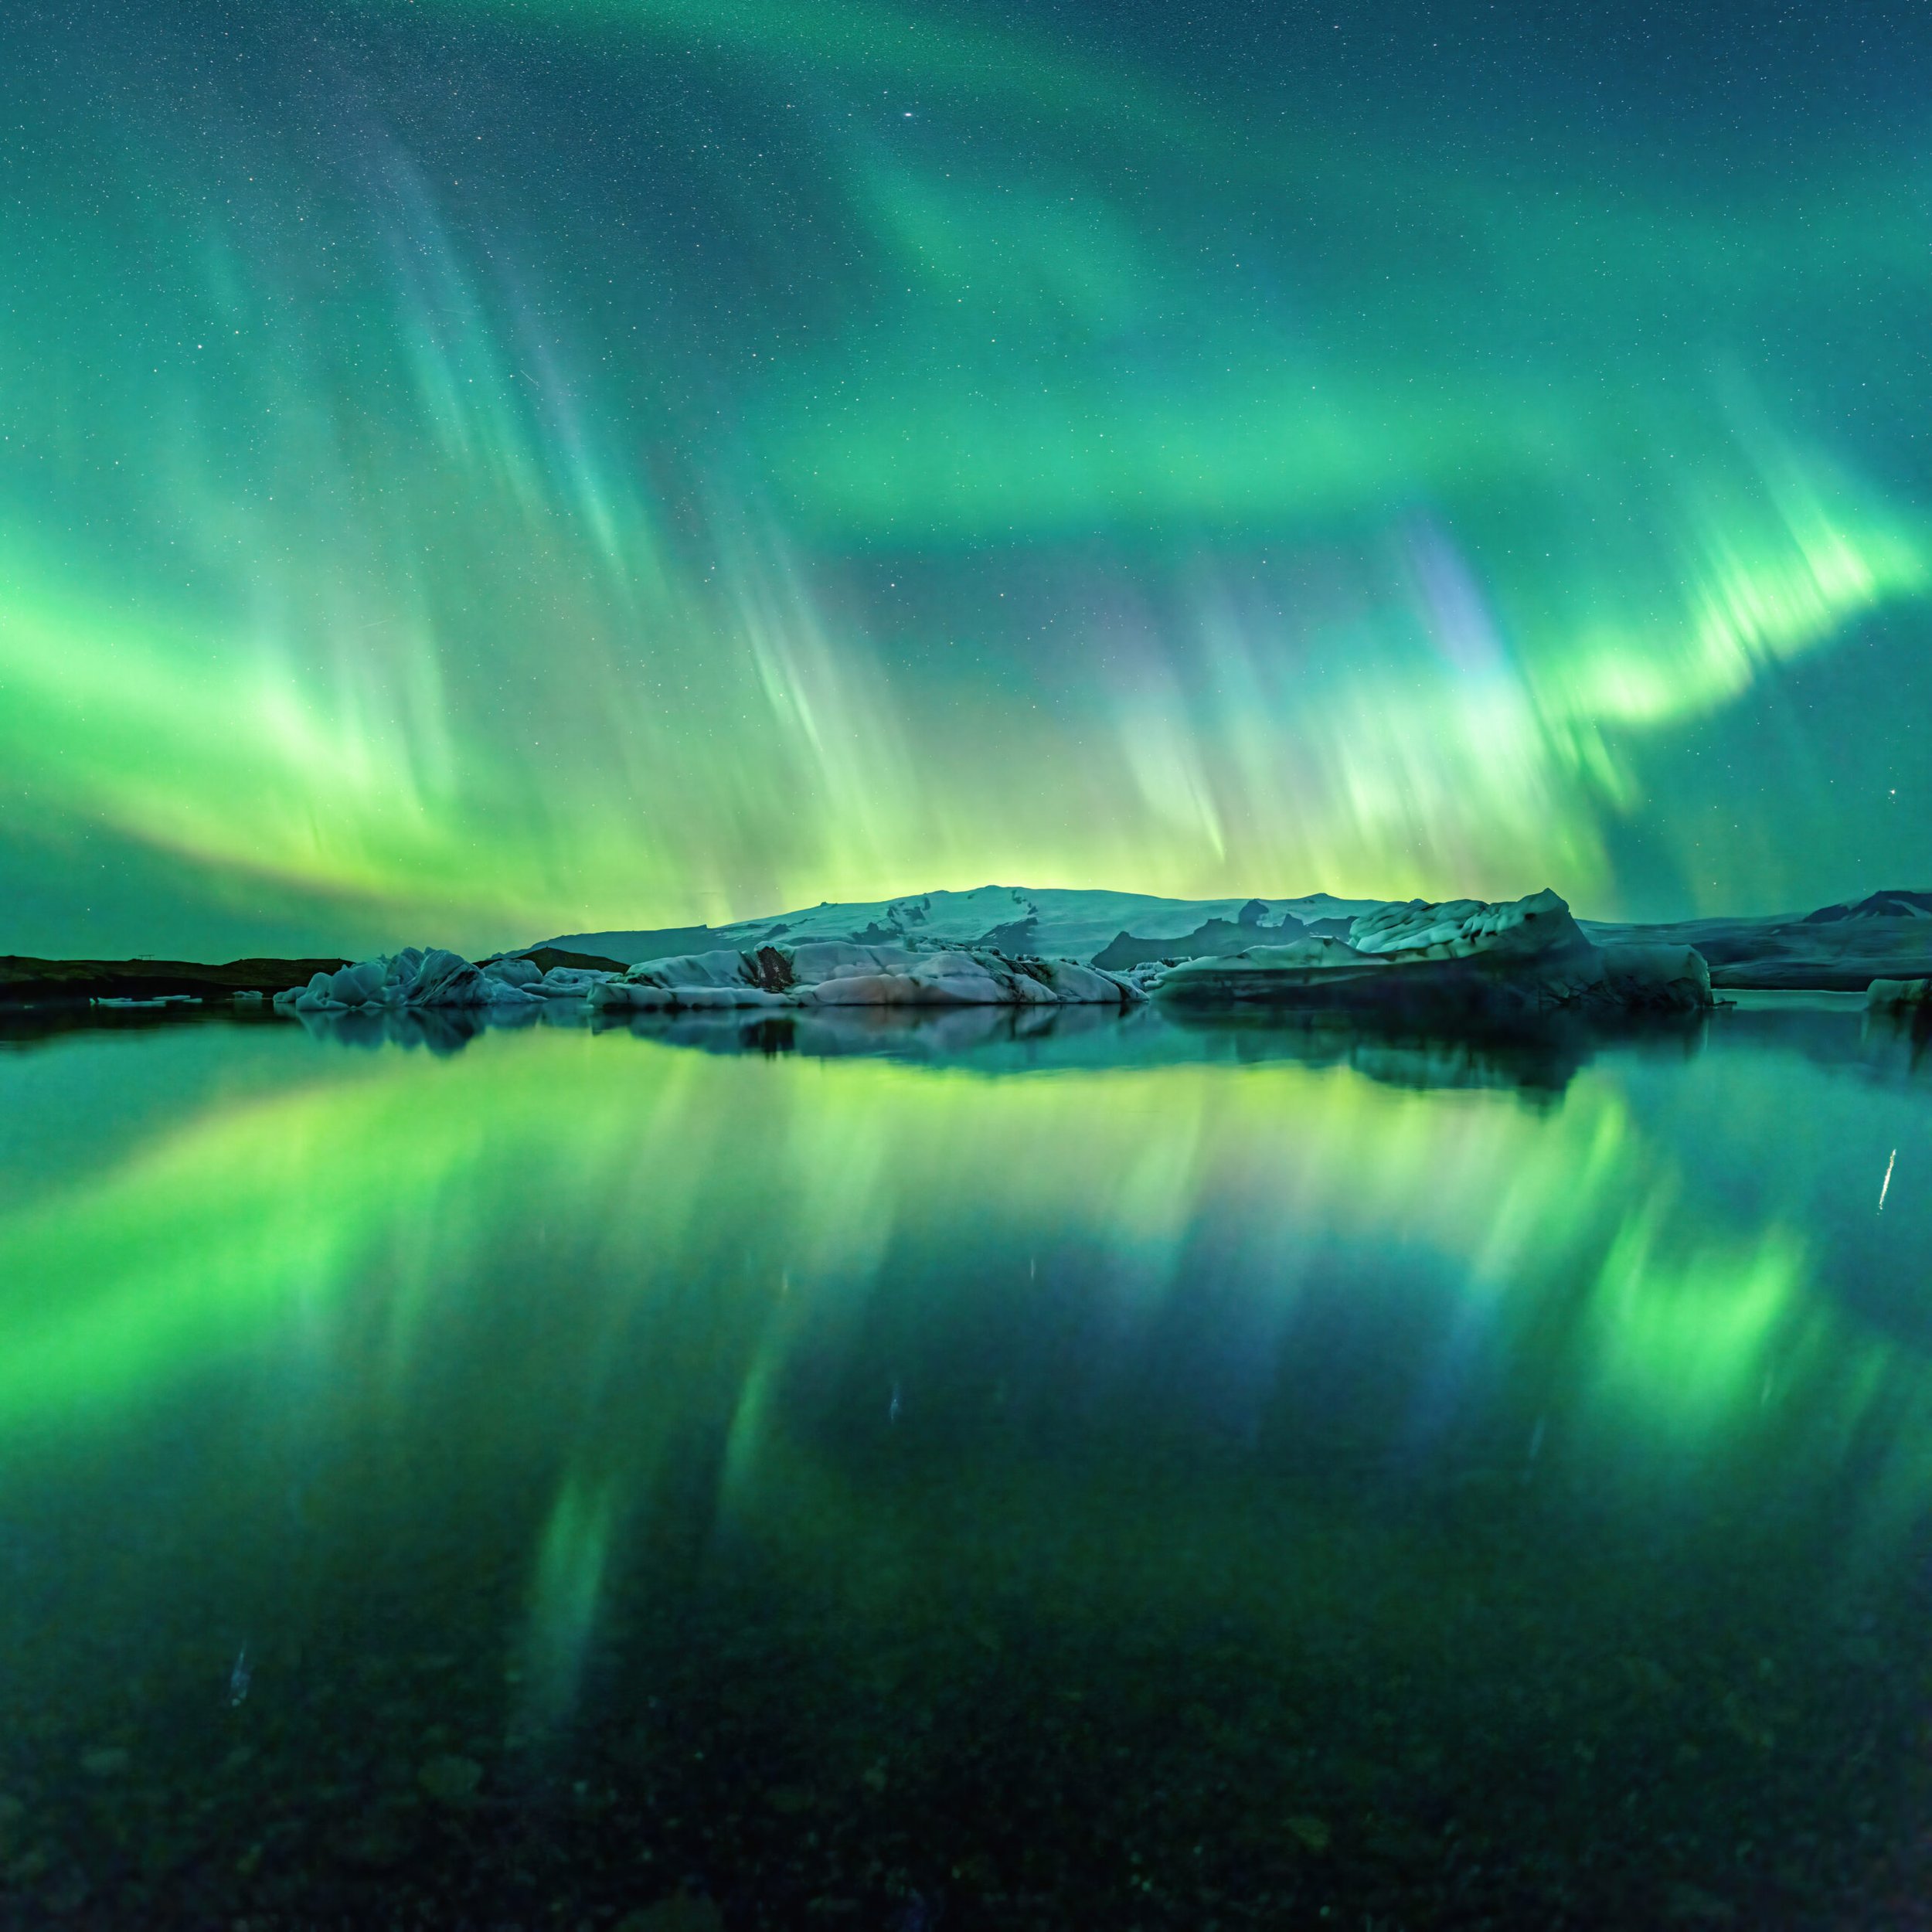 Auroras Boreales en Jökúlsarlón — Islandia (Copy)